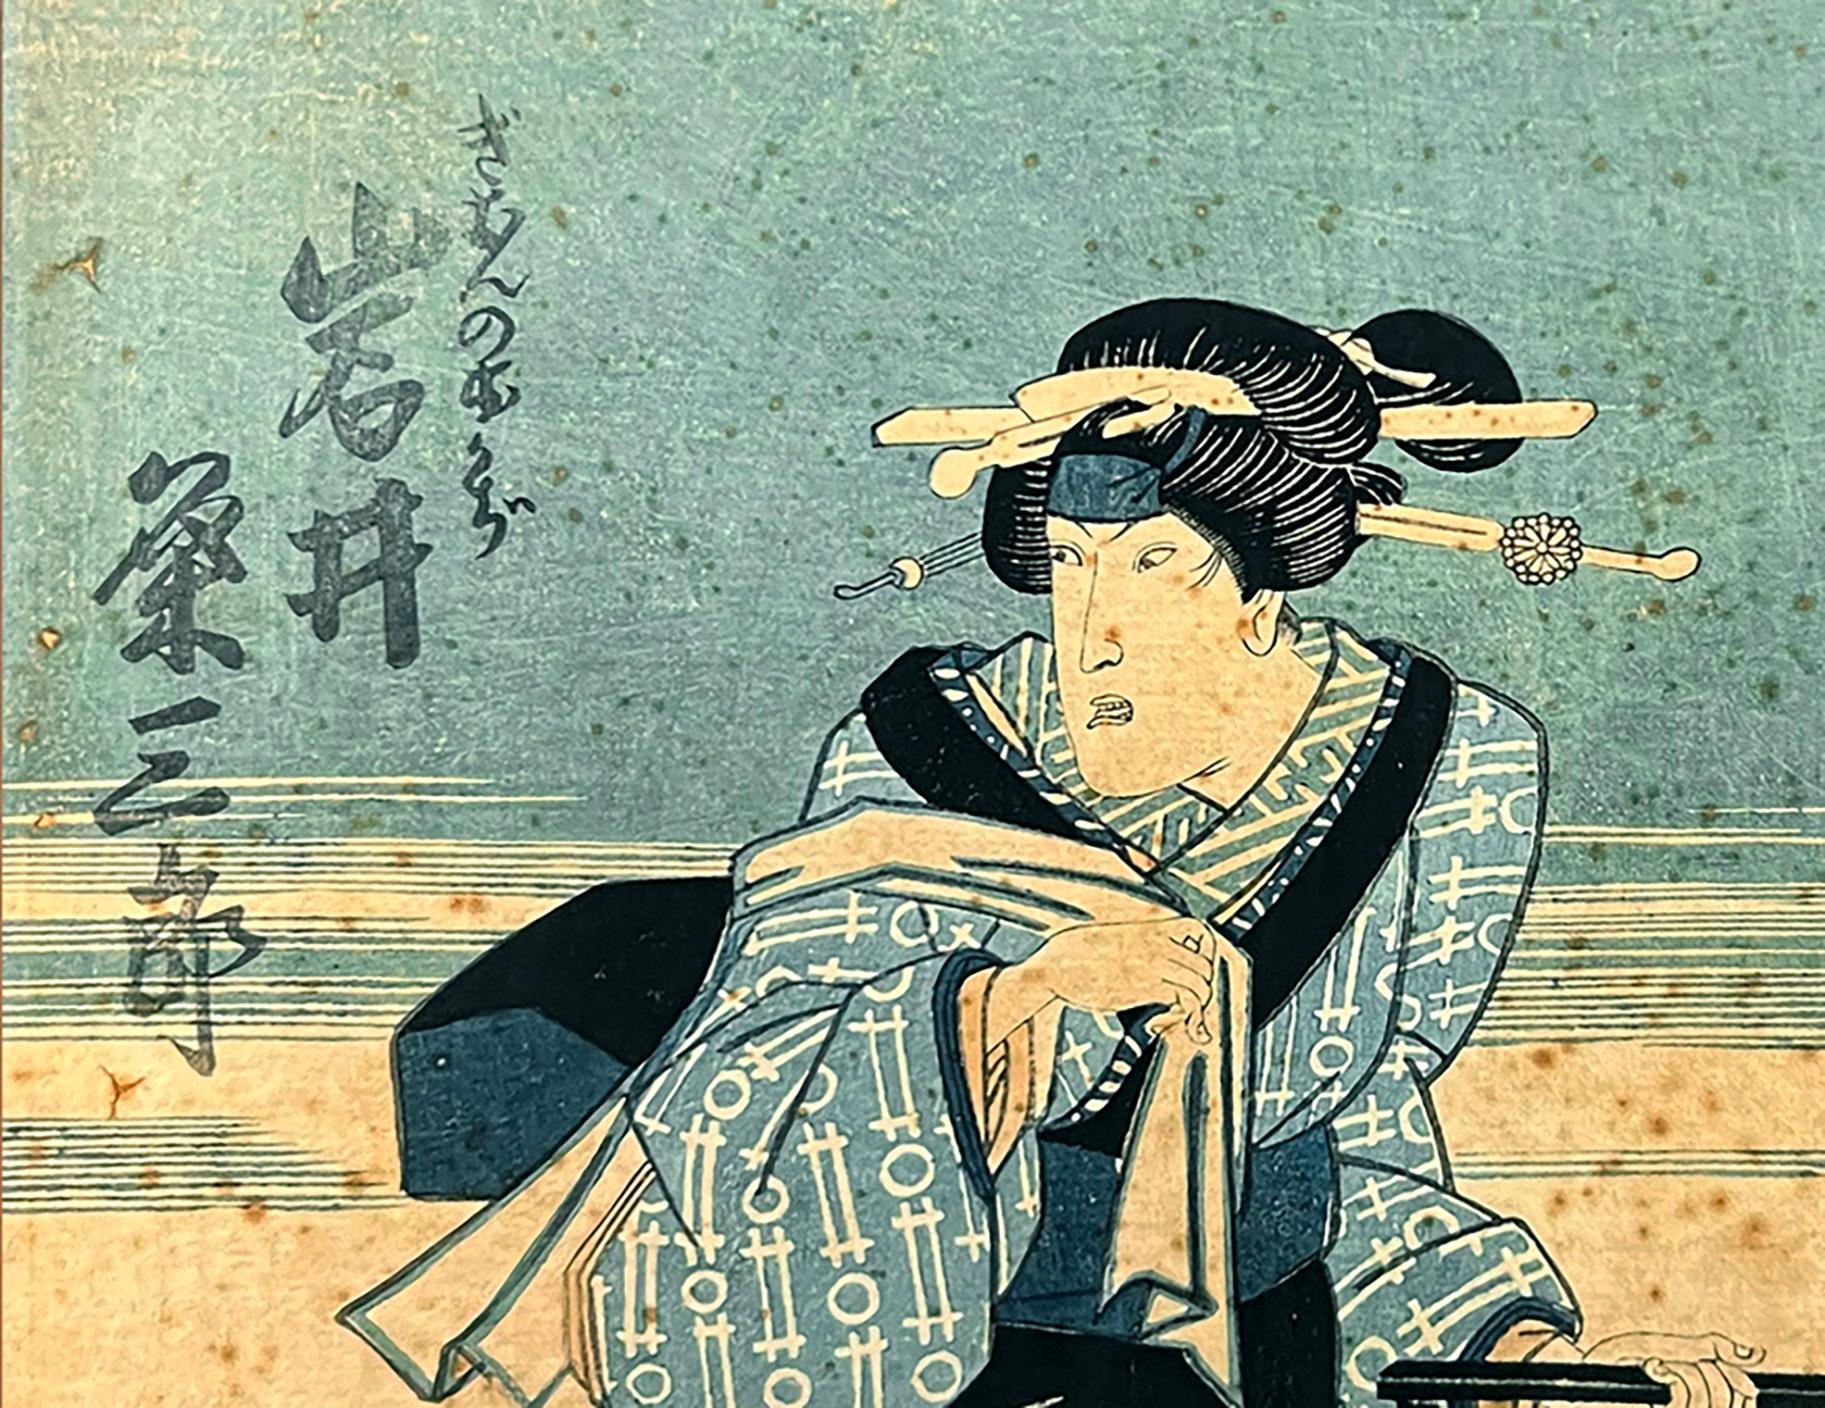 Ichimura Uzaemon XIII – Schauspieler als Okaji des Gion, 1862 „Die sechs unsterblichen Poesie